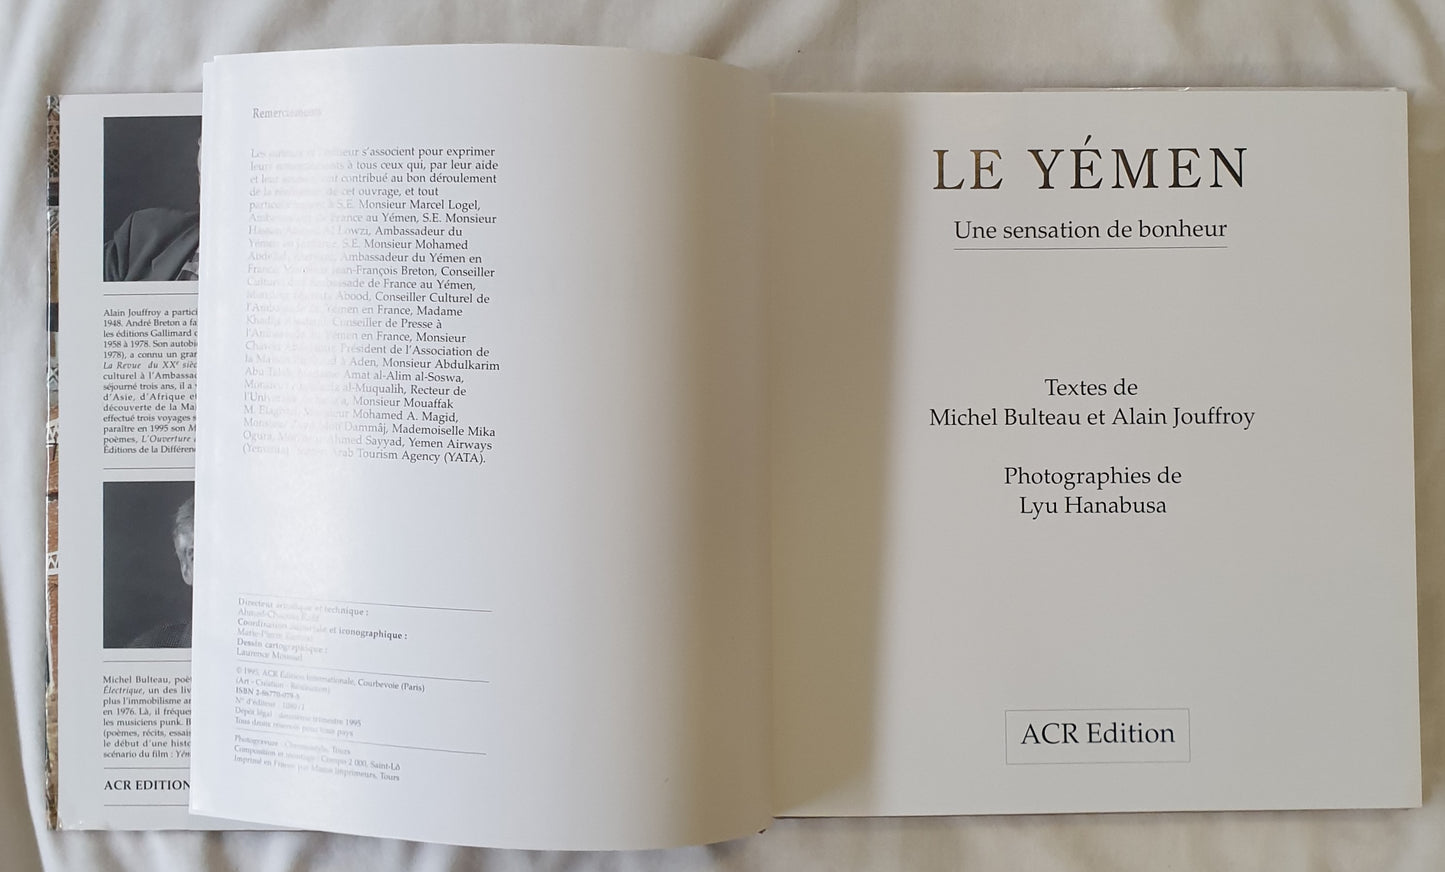 Le Yemen Michel Bulteau et Alain Jouffroy